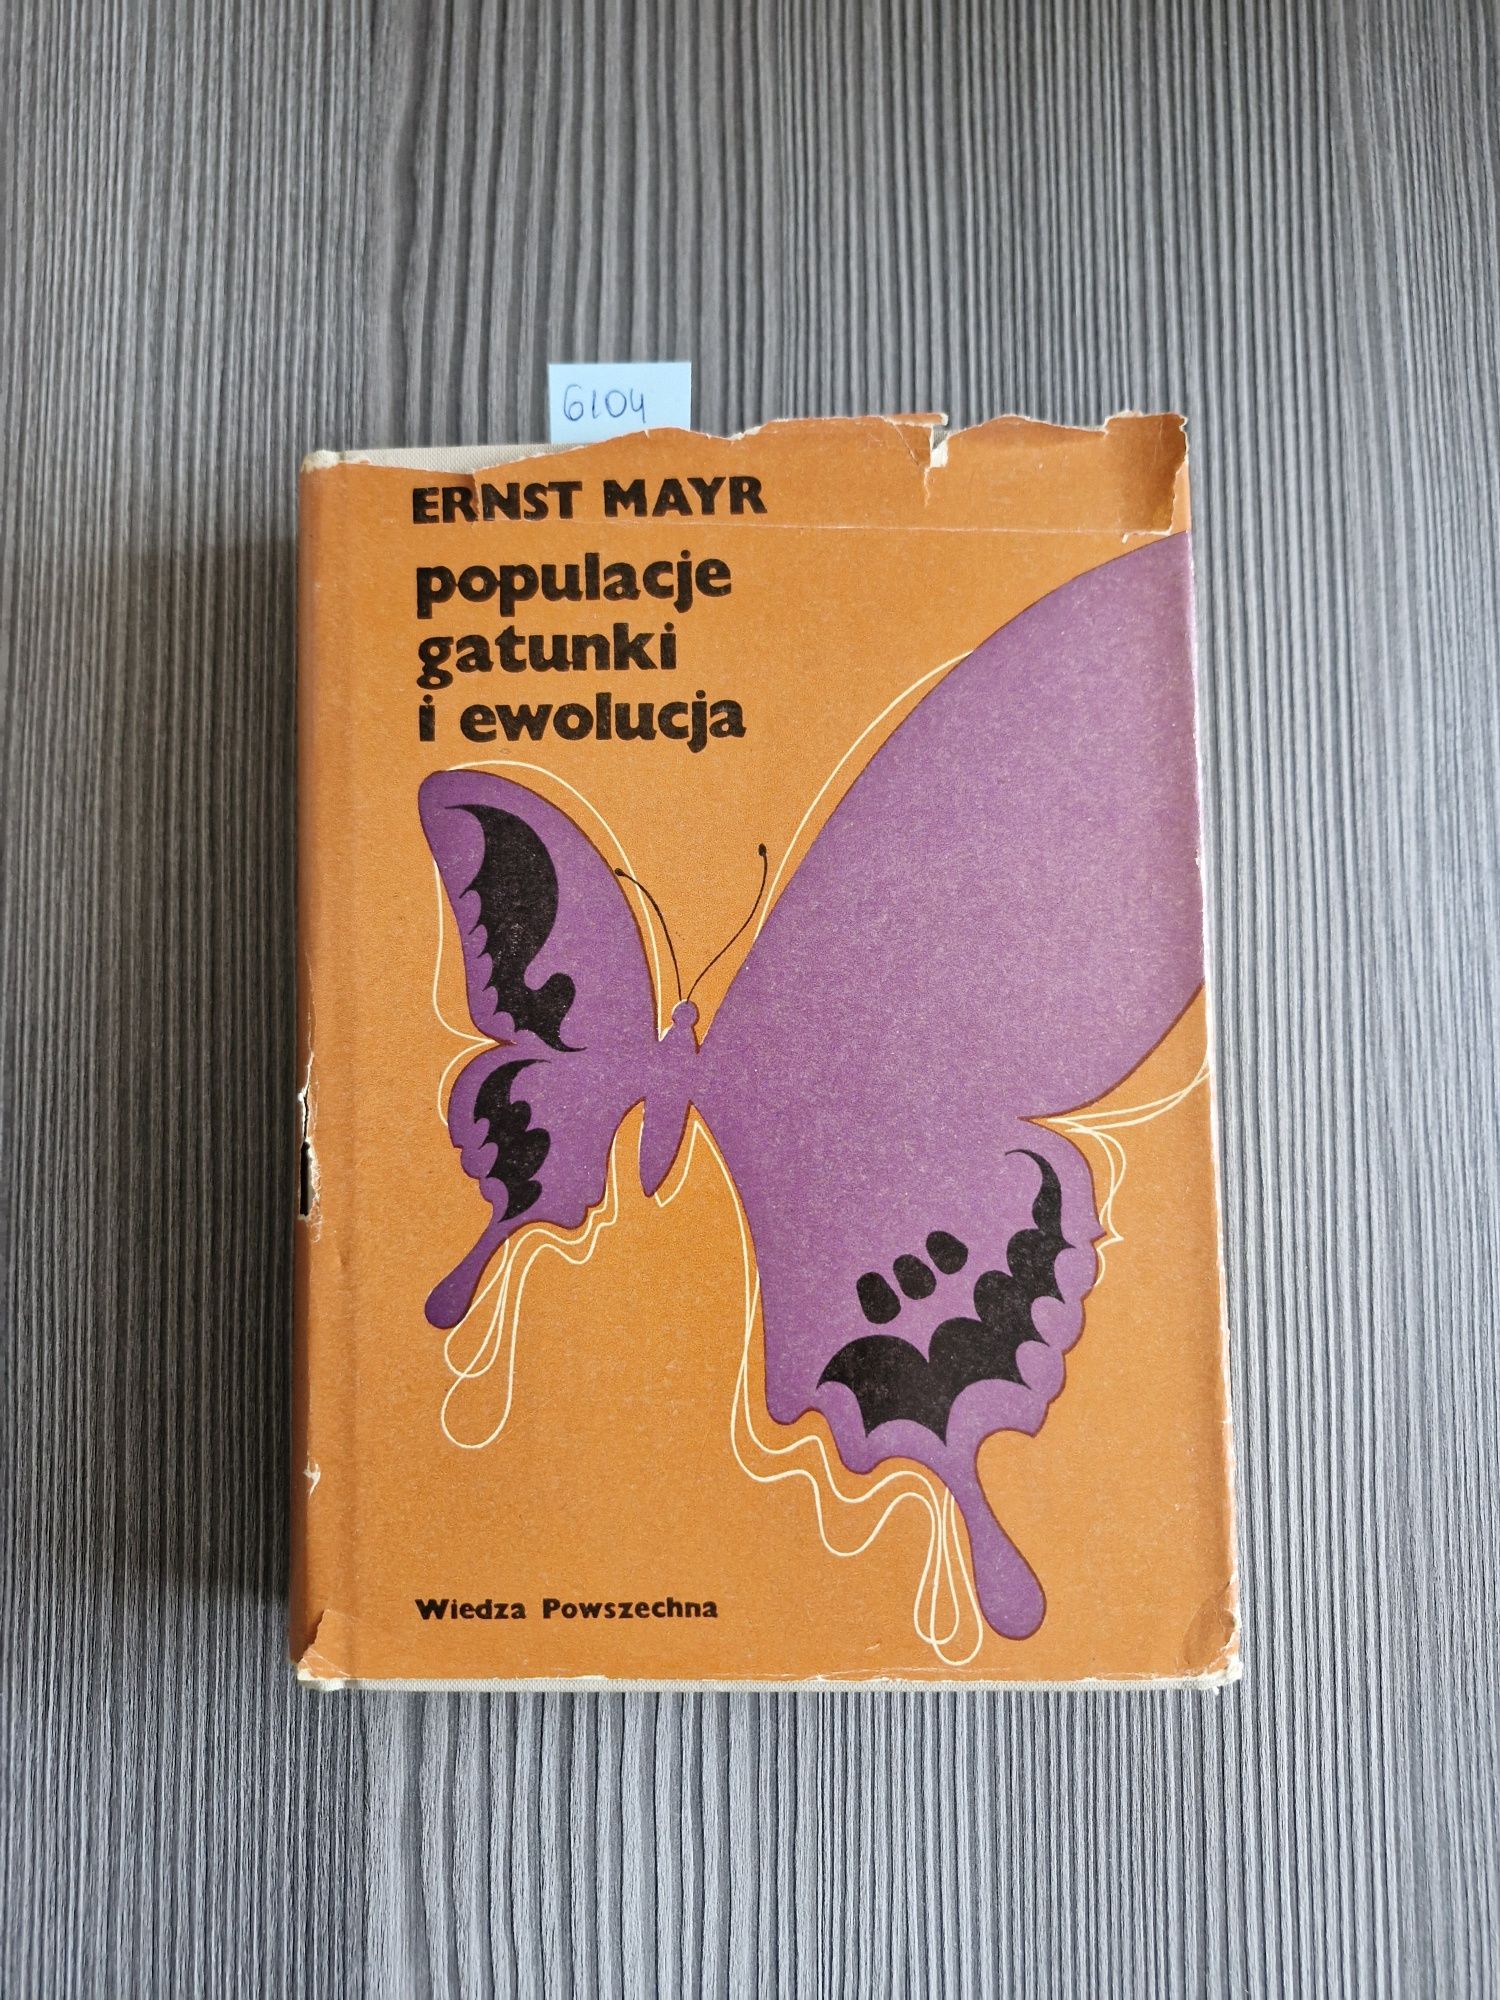 6104. "Populacje, gatunki i ewolucja" Ernst Mayr